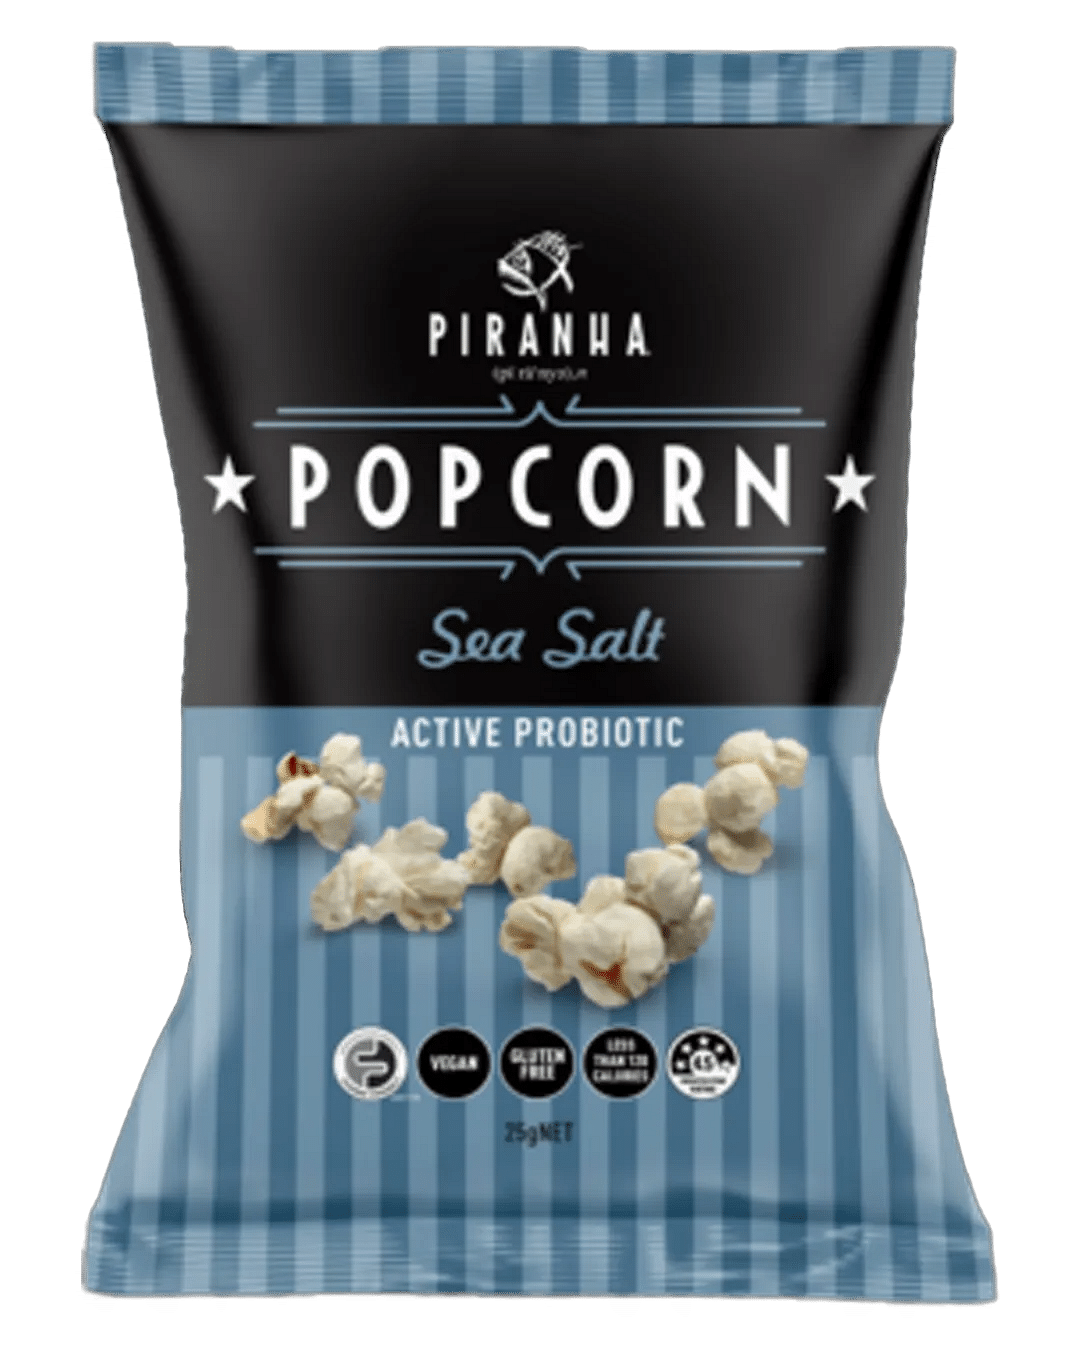 Piranha Popcorn Sea Salt 